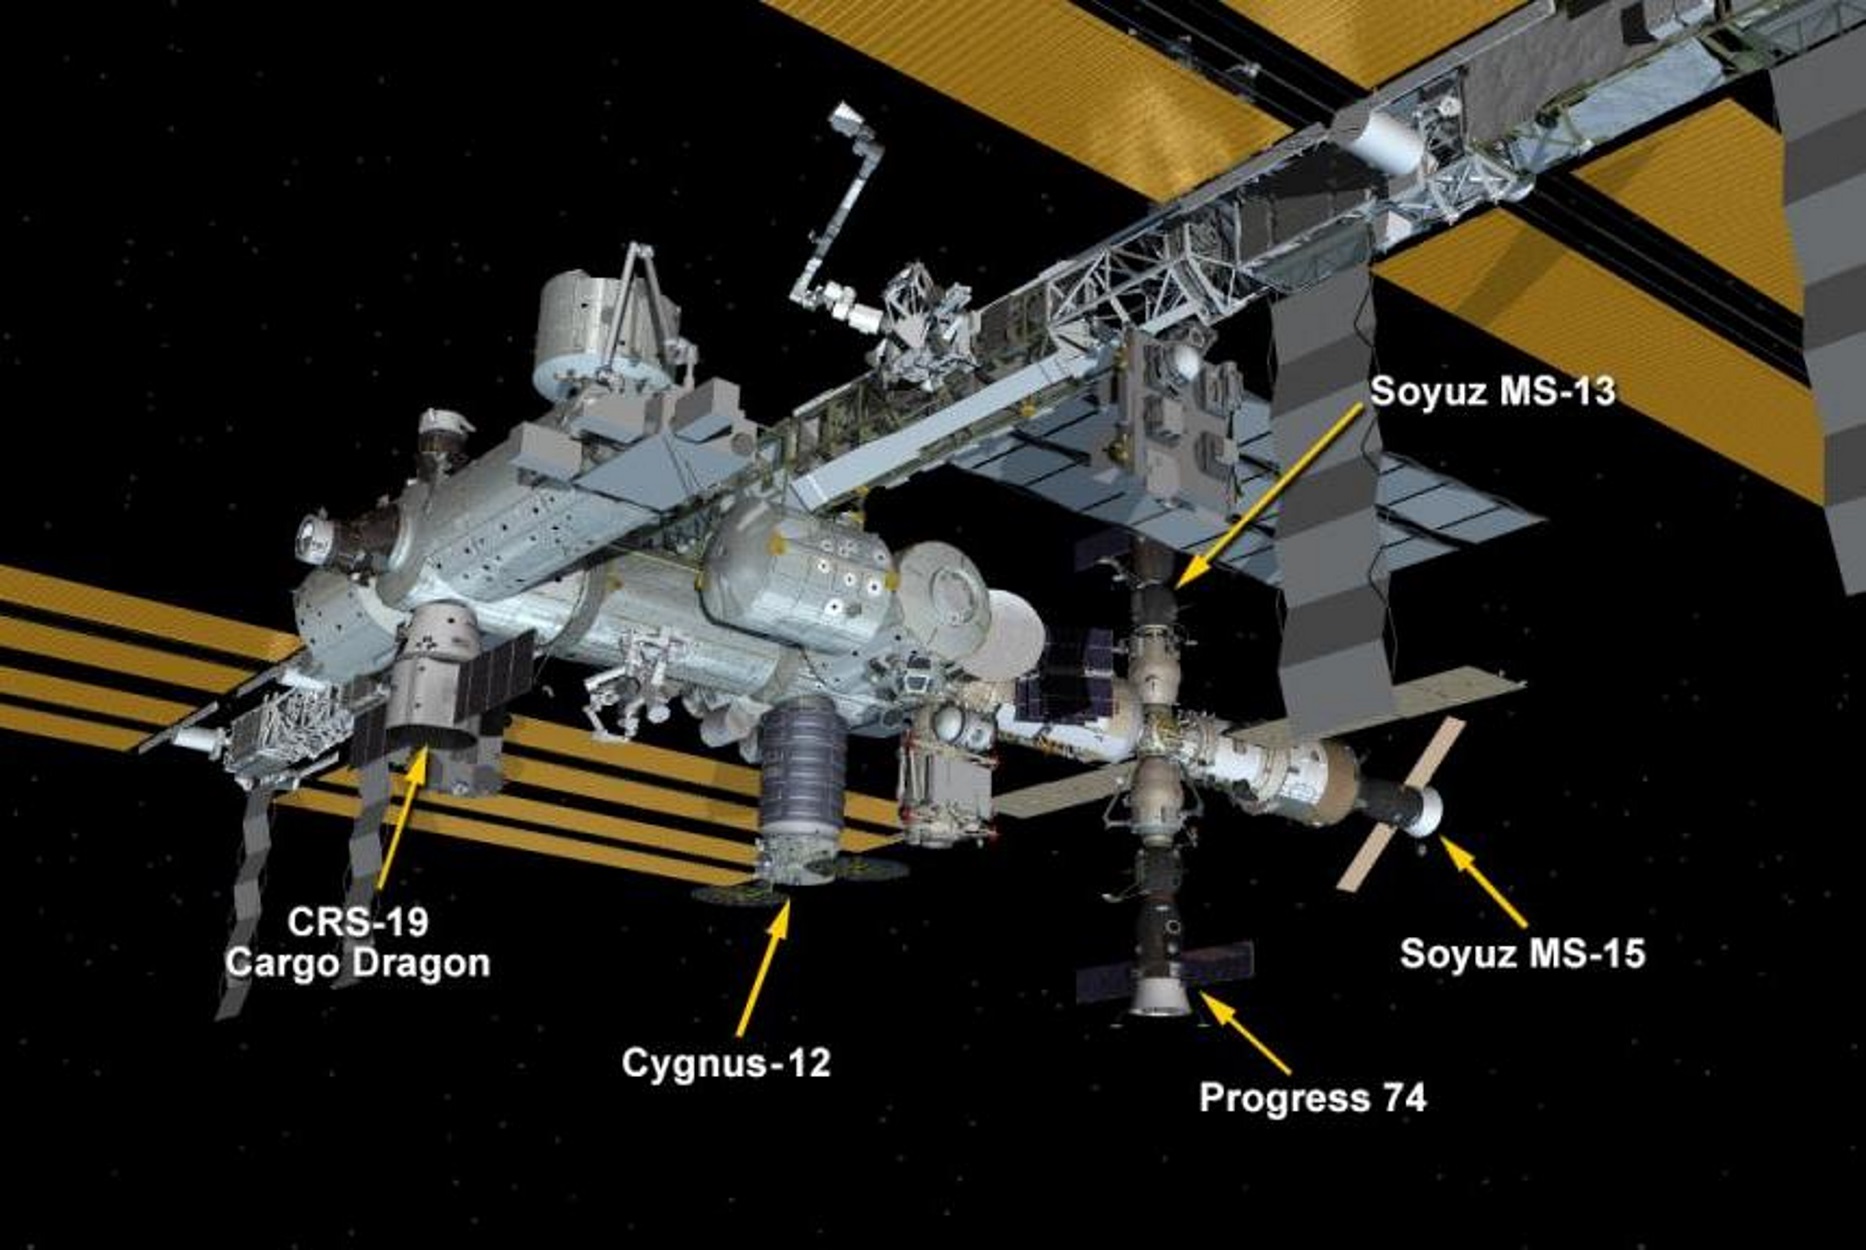 Διεθνής Διαστημικός Σταθμός: Μετατράπηκε σε… πάρκινγκ διαστημικών σκαφών!